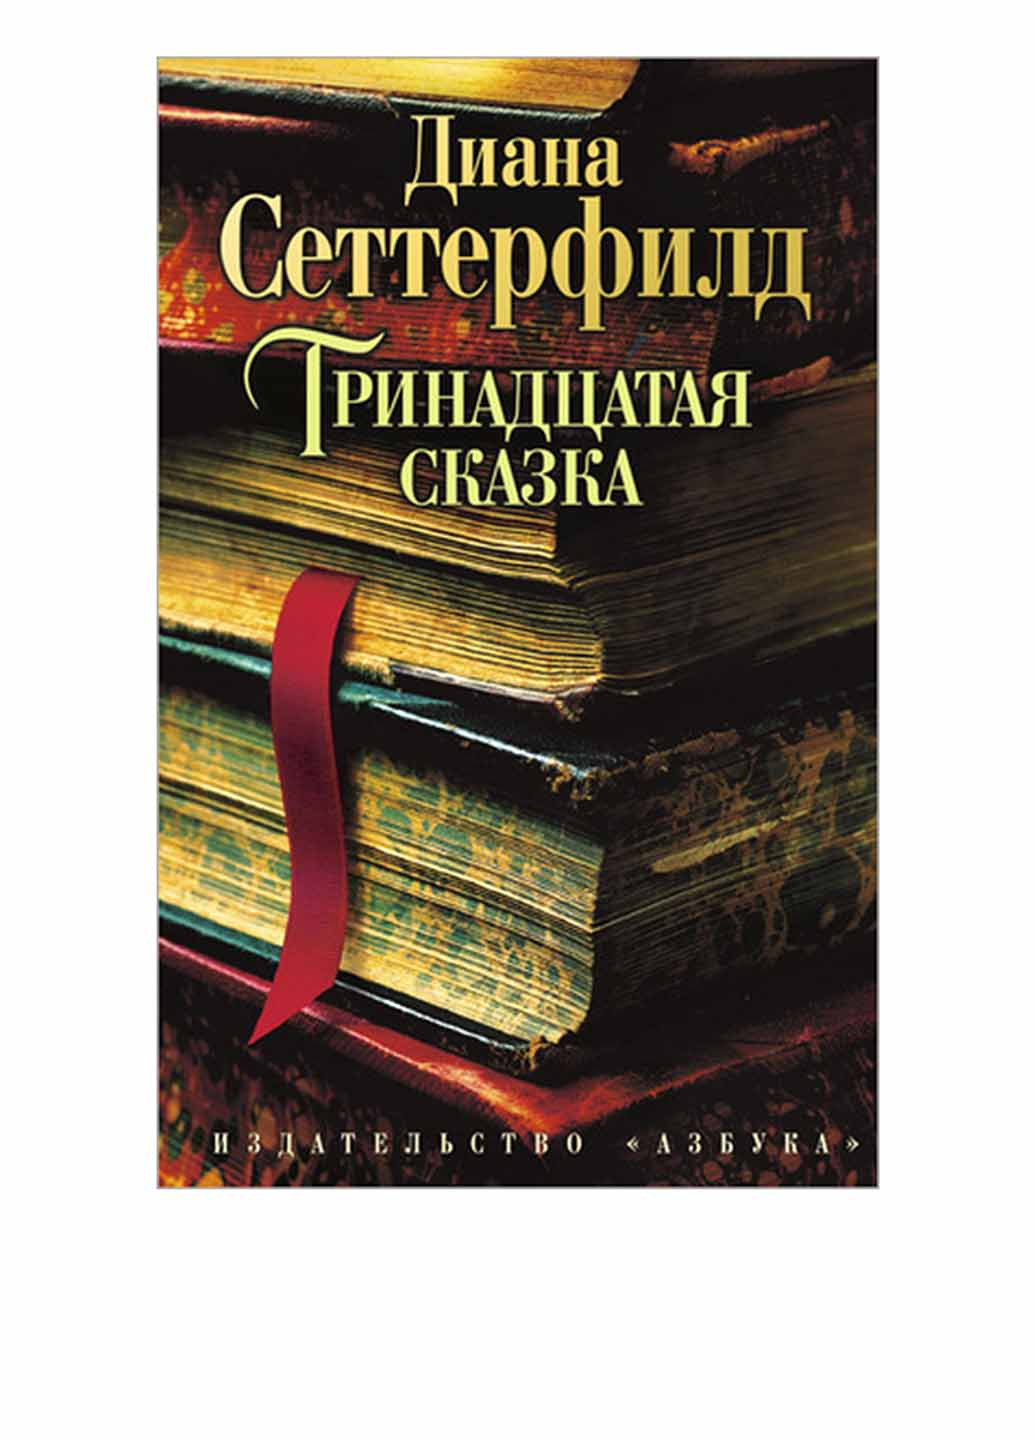 Книга "Тринадцатая сказка" Издательство "Азбука" (14762936)